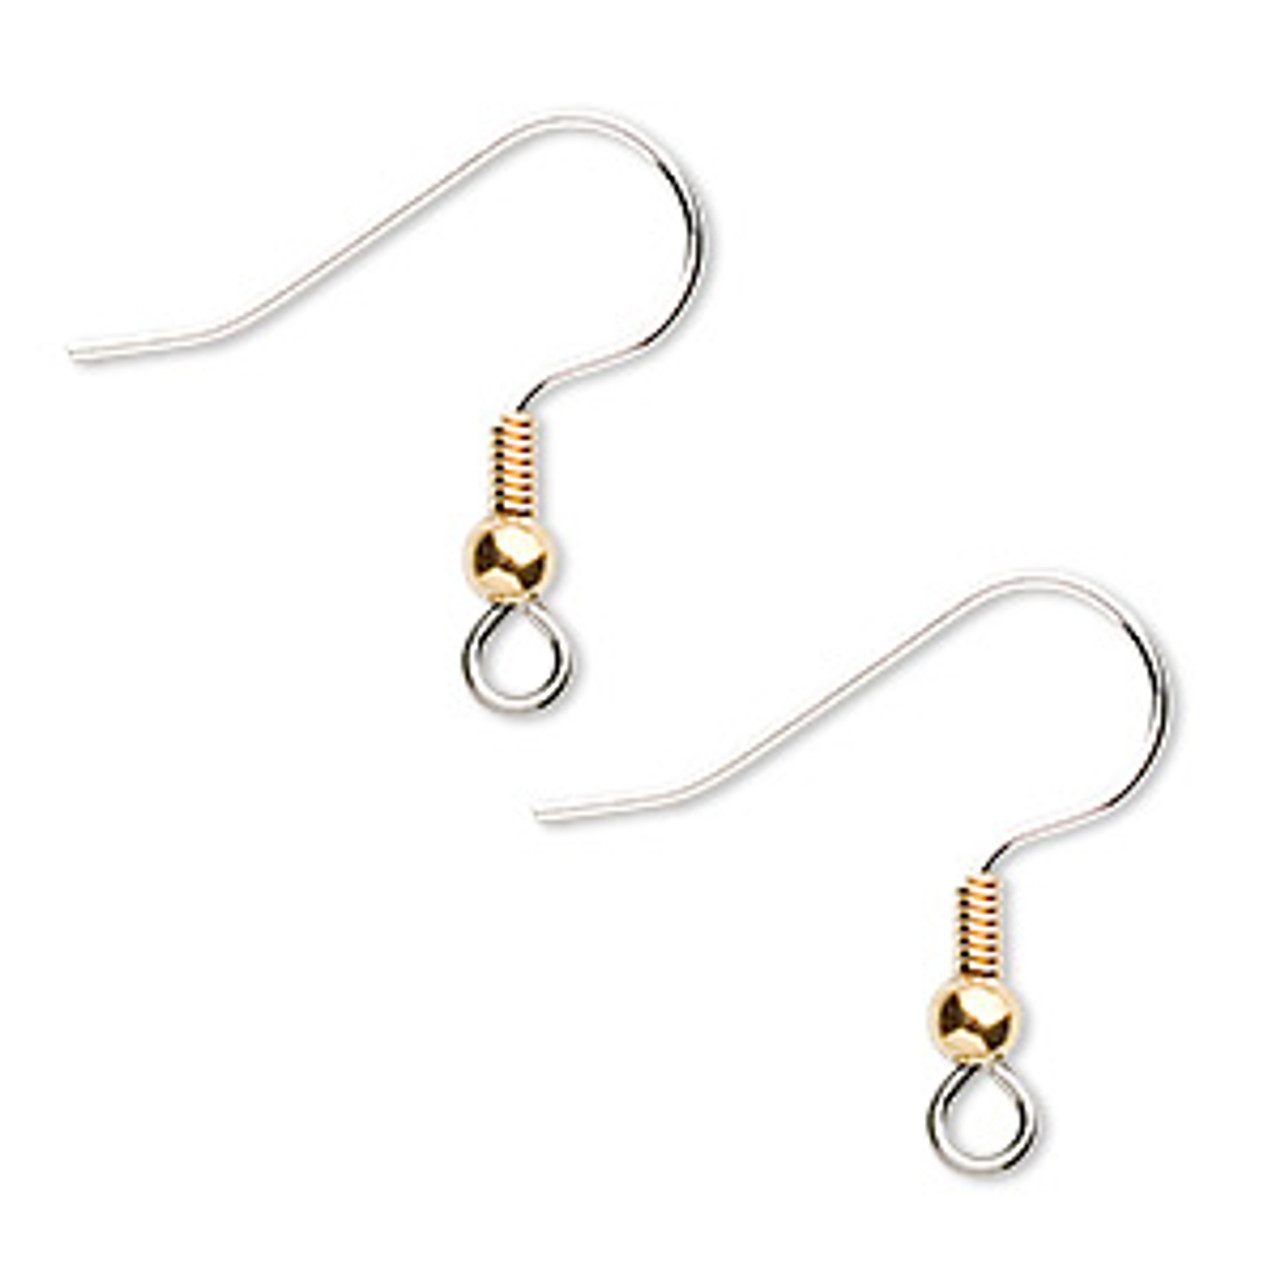  20 Sterling Silver Fish Hook Earrings Earwires w/Coil